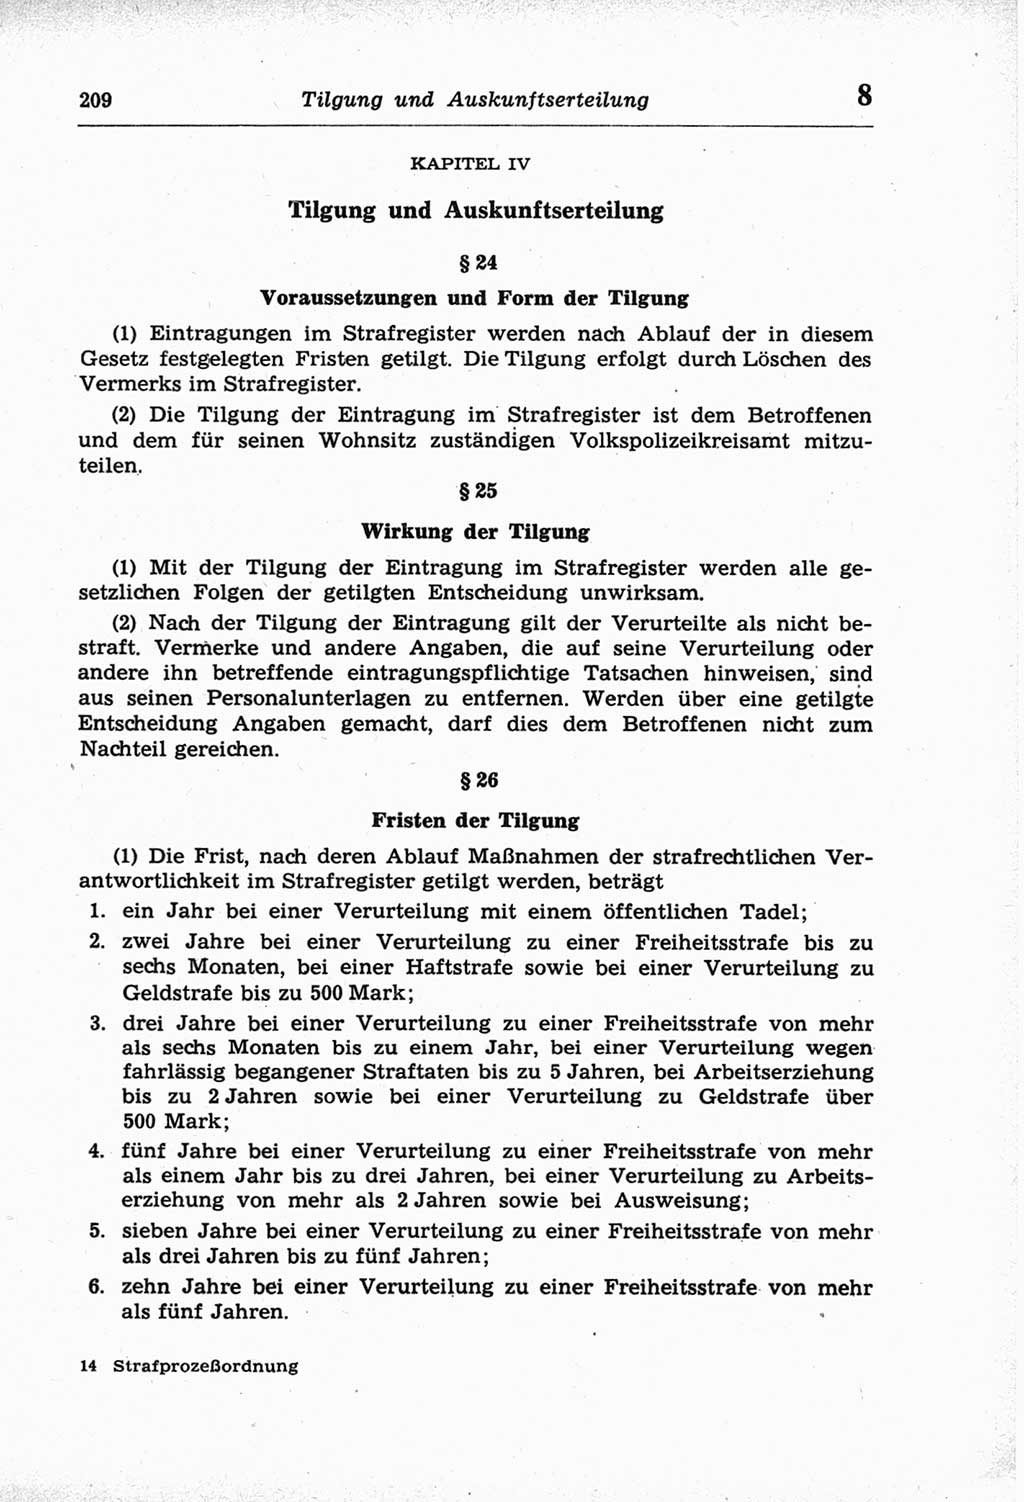 Strafprozeßordnung (StPO) der Deutschen Demokratischen Republik (DDR) und angrenzende Gesetze und Bestimmungen 1968, Seite 209 (StPO Ges. Bstgn. DDR 1968, S. 209)